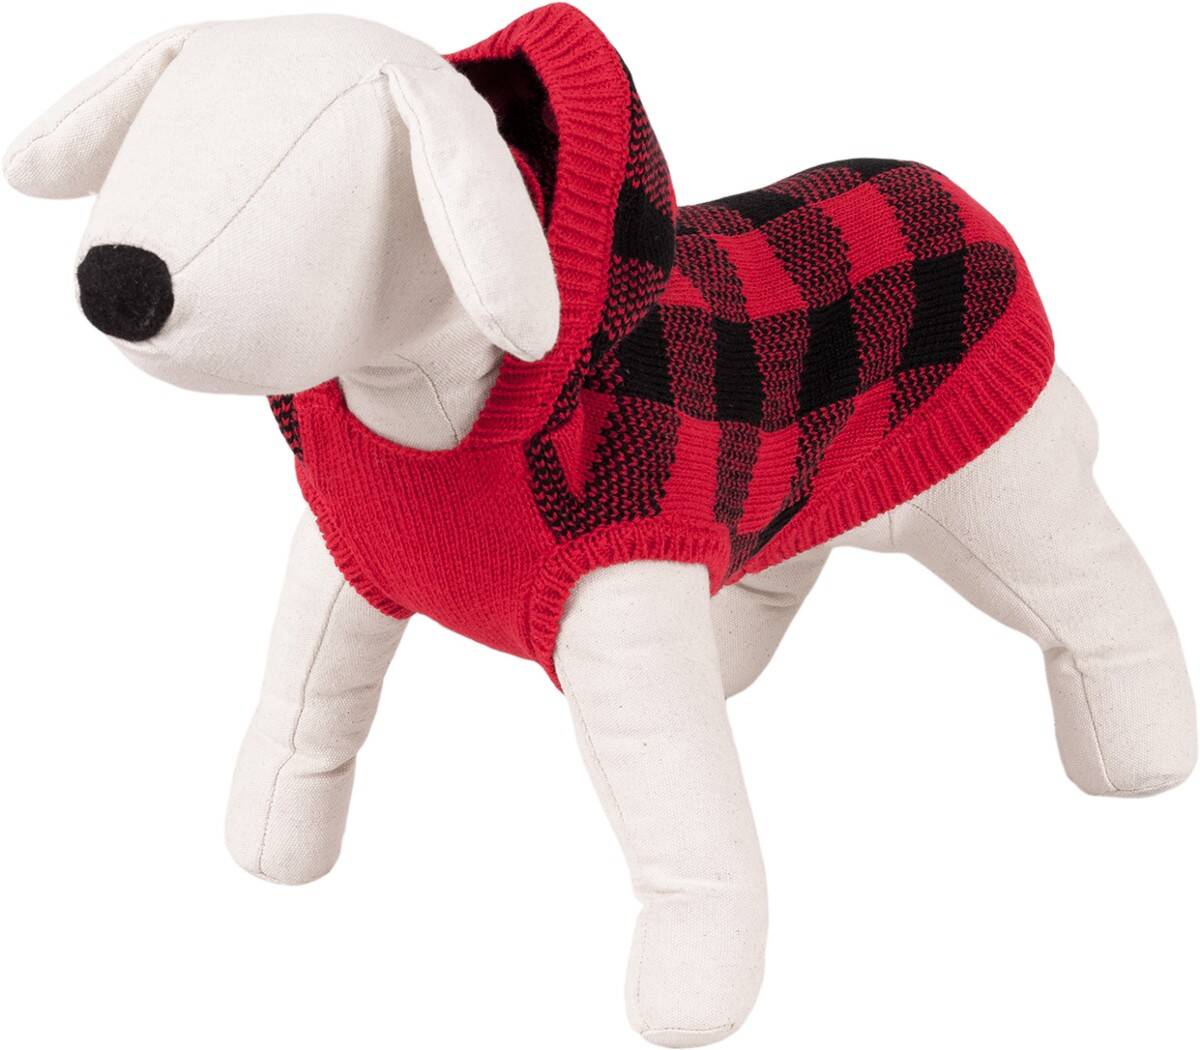 Pullover mit Kapuze  für einen Hund der Größe XL Happet 42XL  XL-40cm (Z-42XLRH)